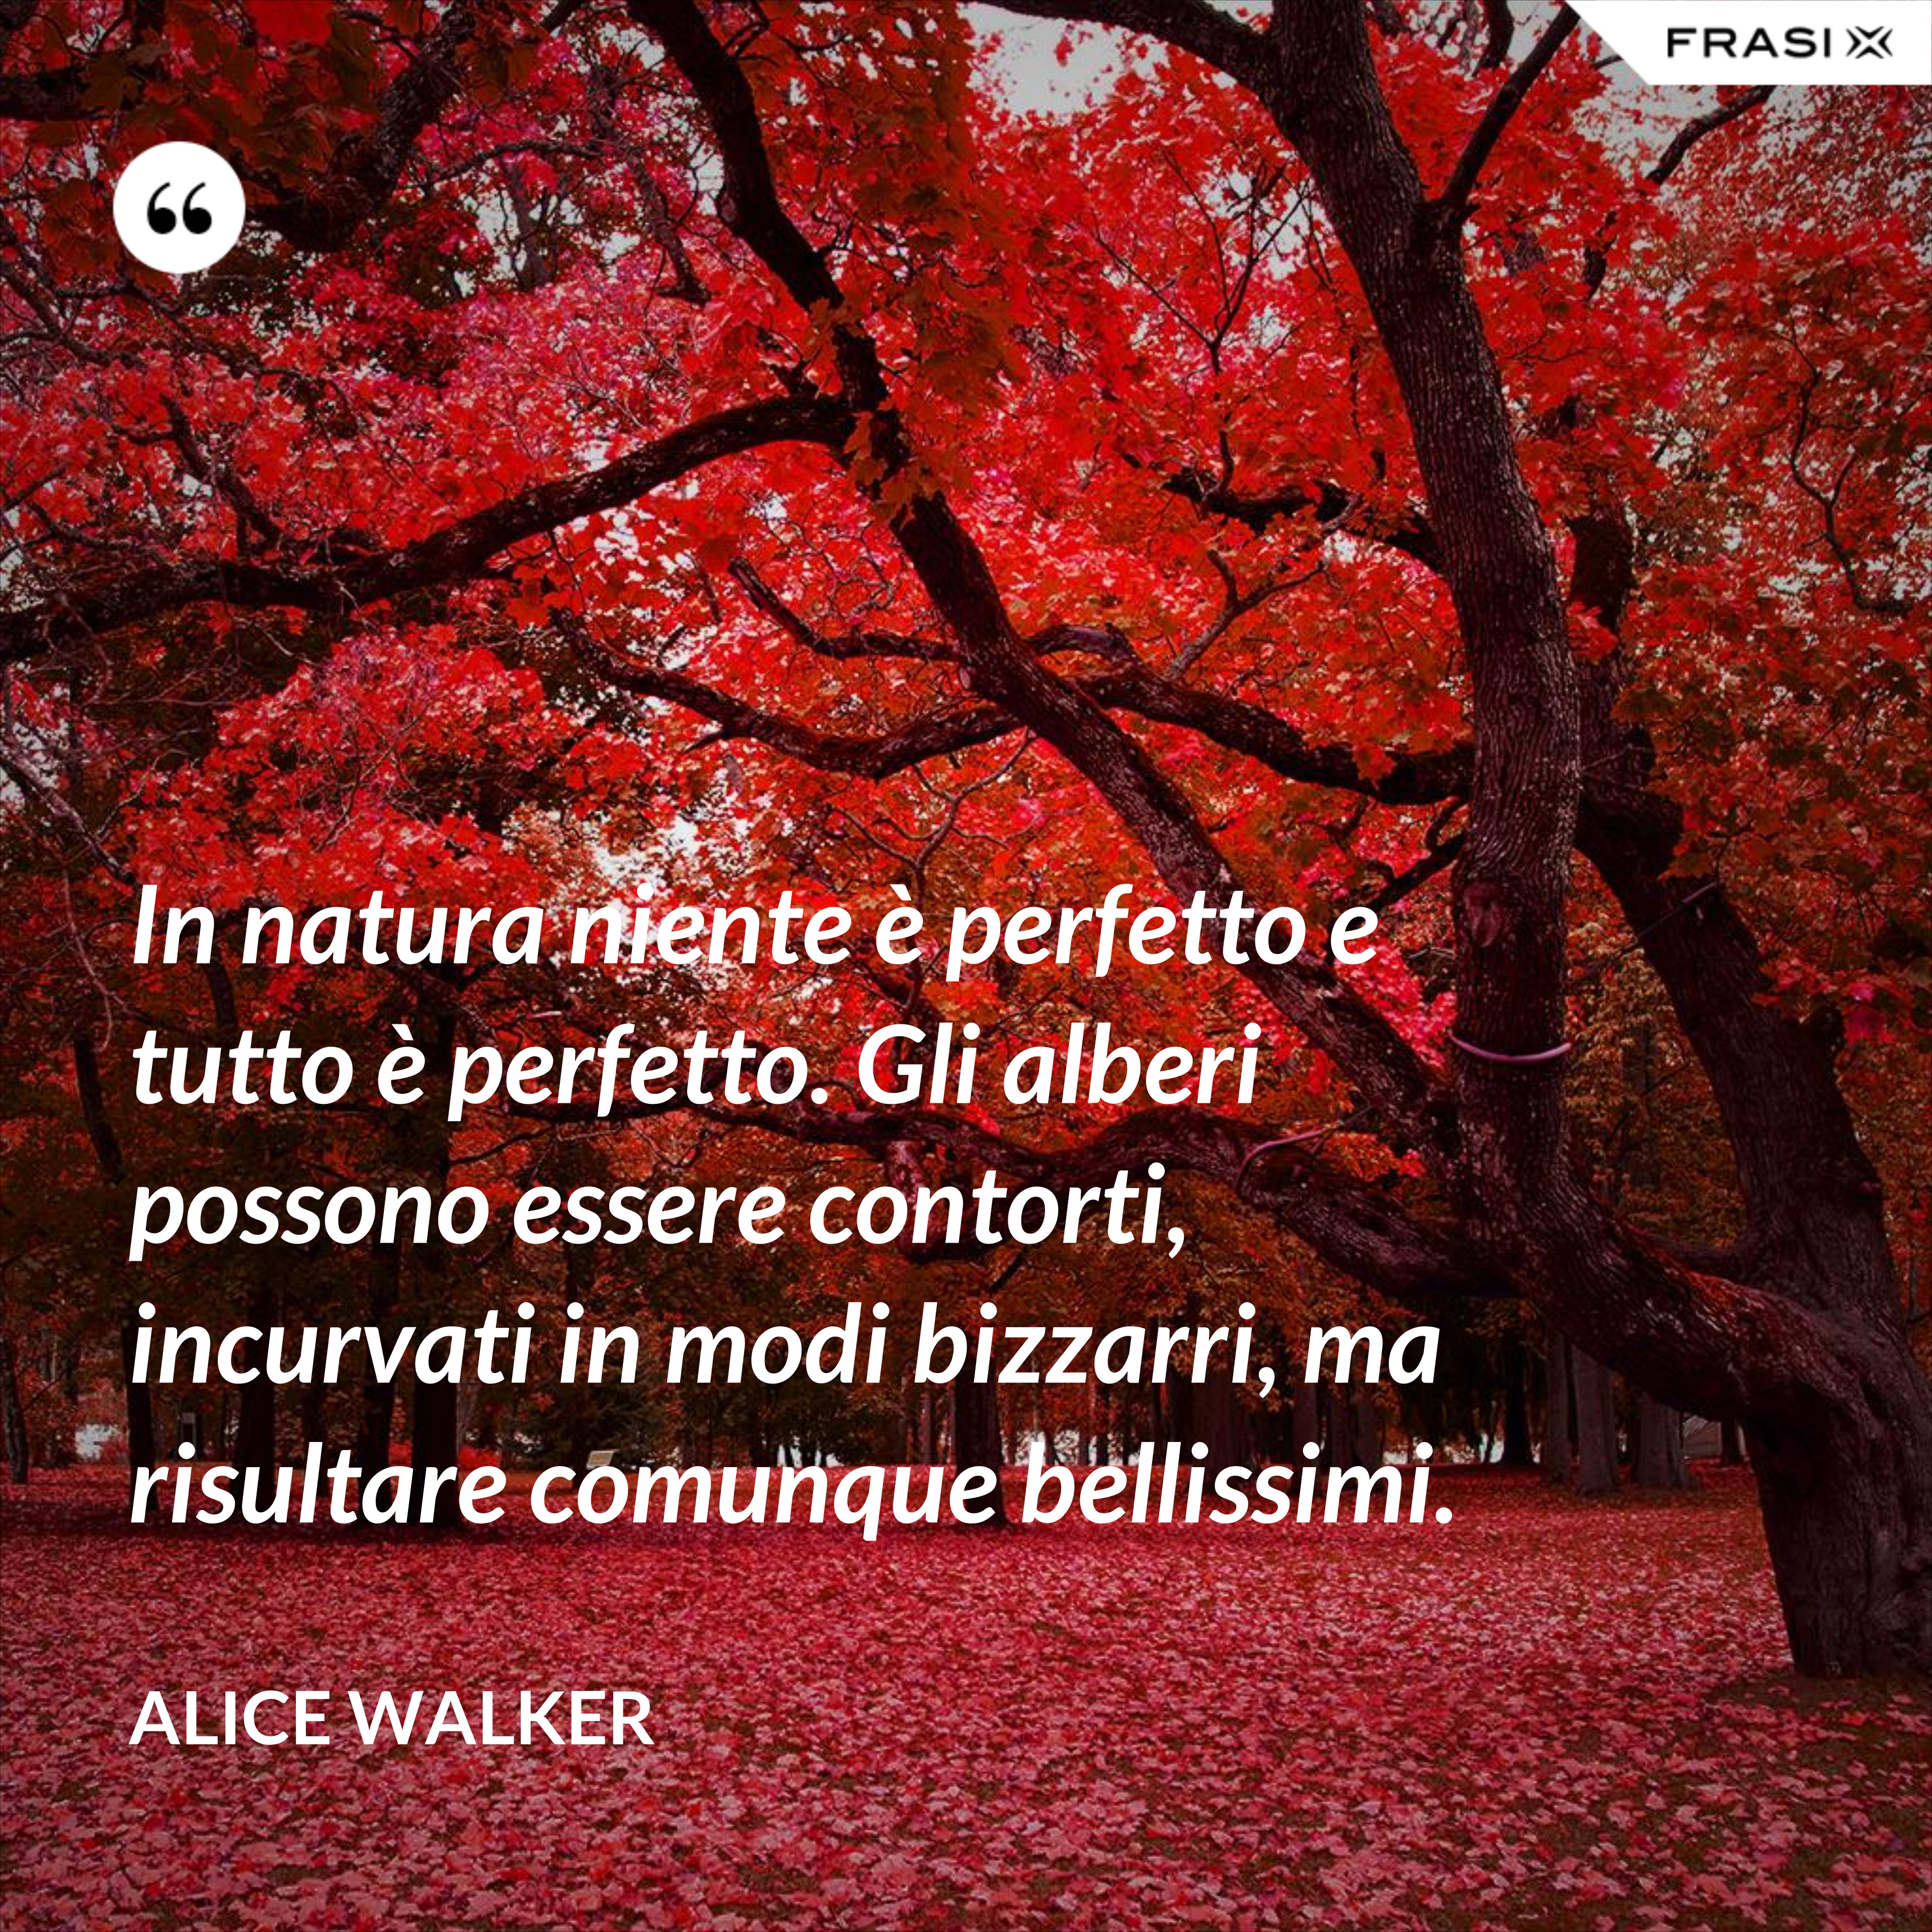 In natura niente è perfetto e tutto è perfetto. Gli alberi possono essere contorti, incurvati in modo bizzarri, ma risultare comunque bellissimi. - Alice Walker